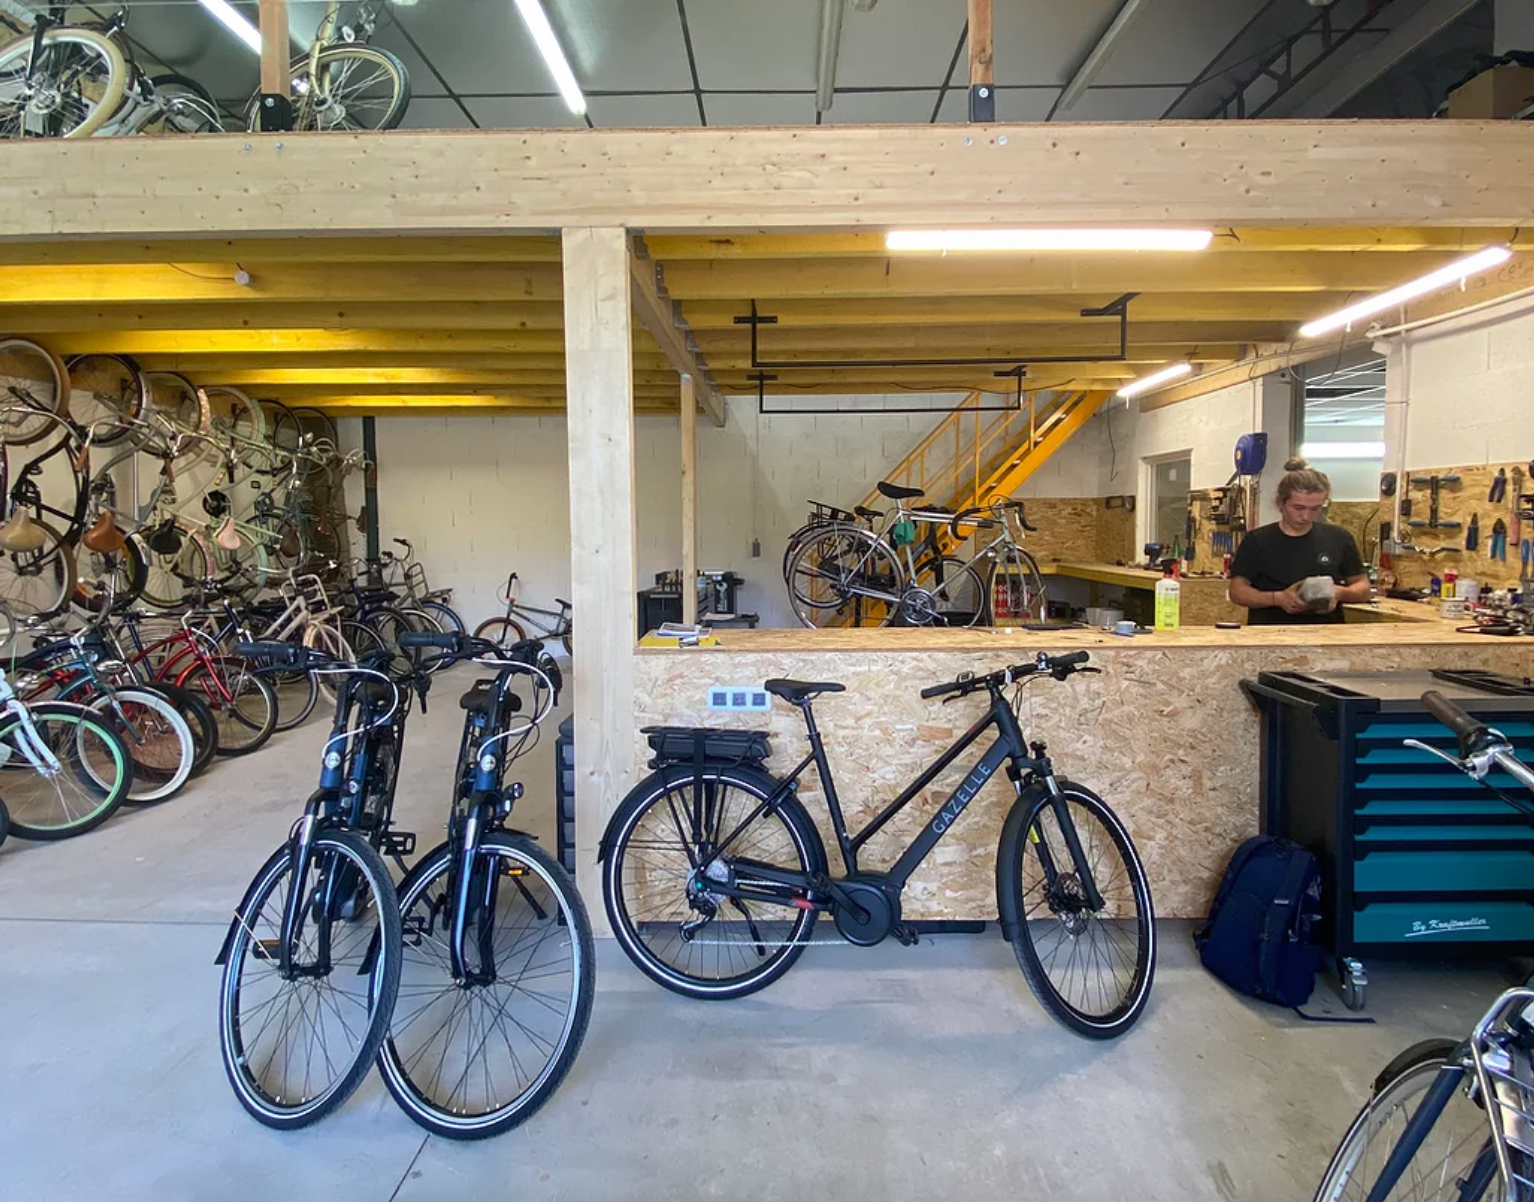 Calaise Bicycle propose à la vente des vieux vélos reconditionnés dans leur atelier